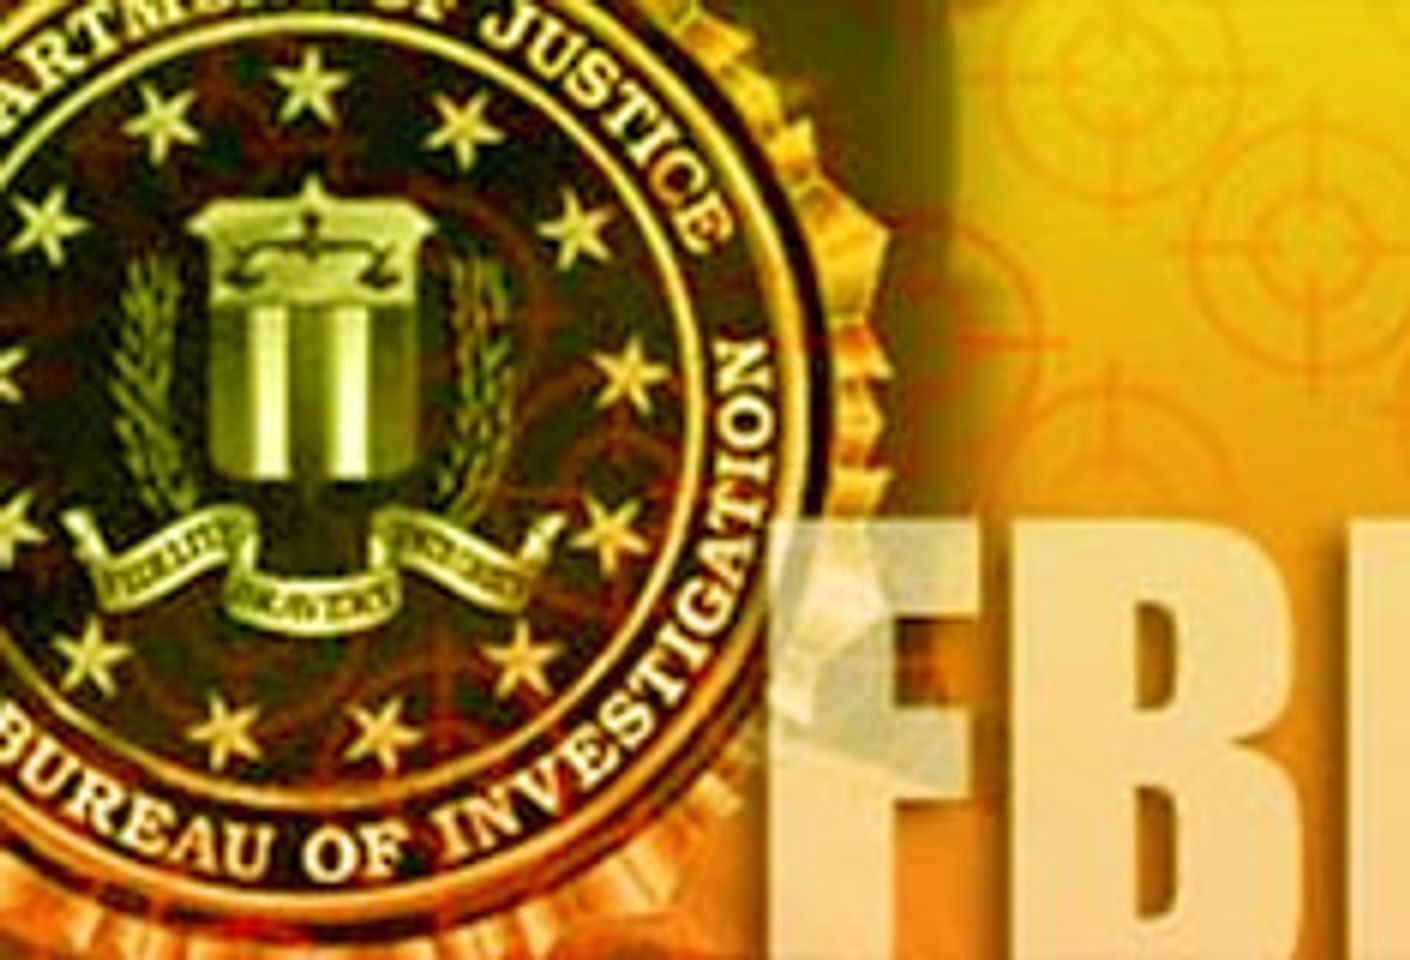 FBI Visits K-Beech